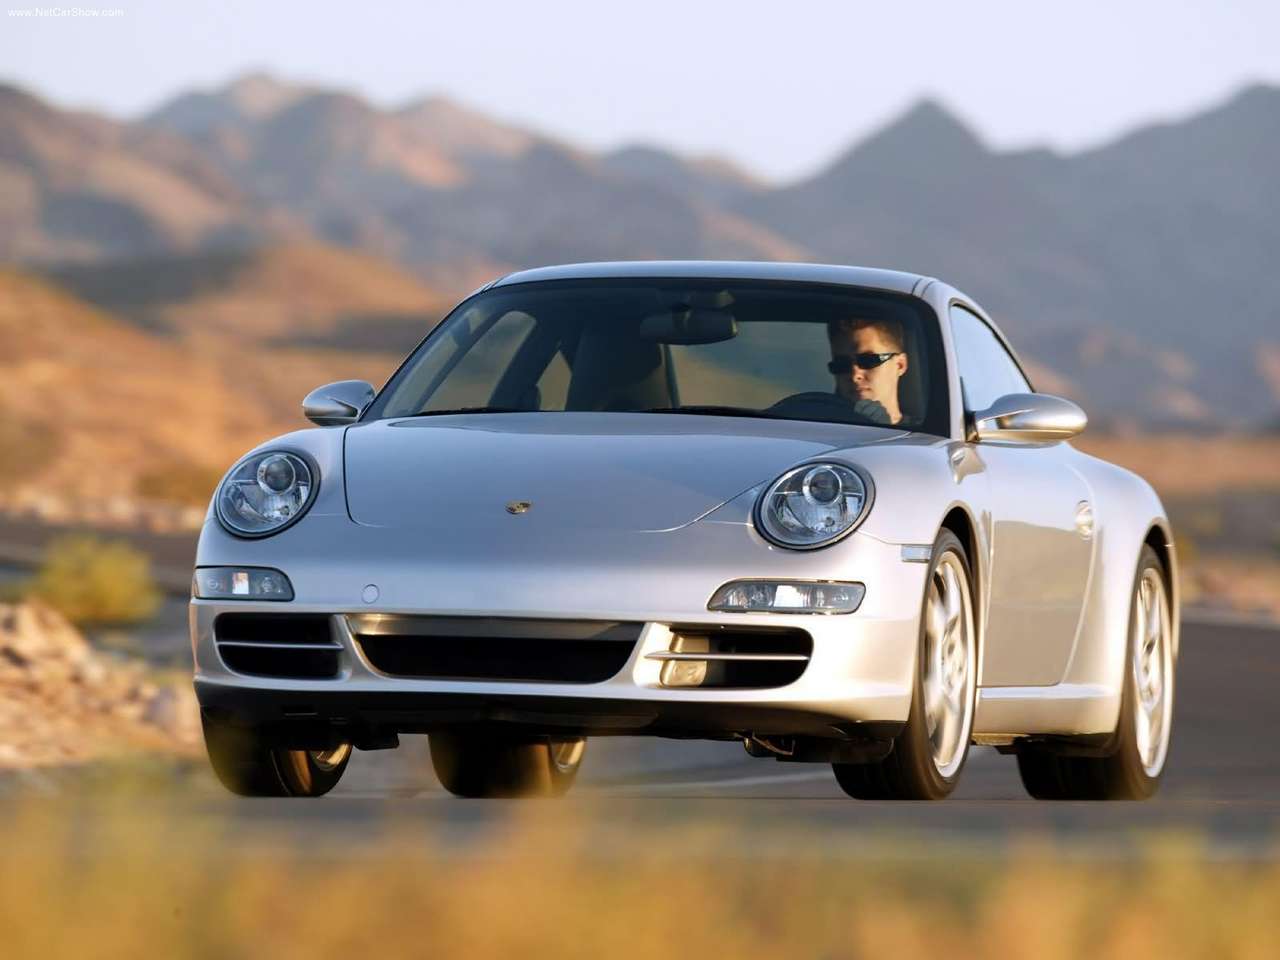 2005 Porsche 911 Carrera 1280×960 Wallpaper 0f